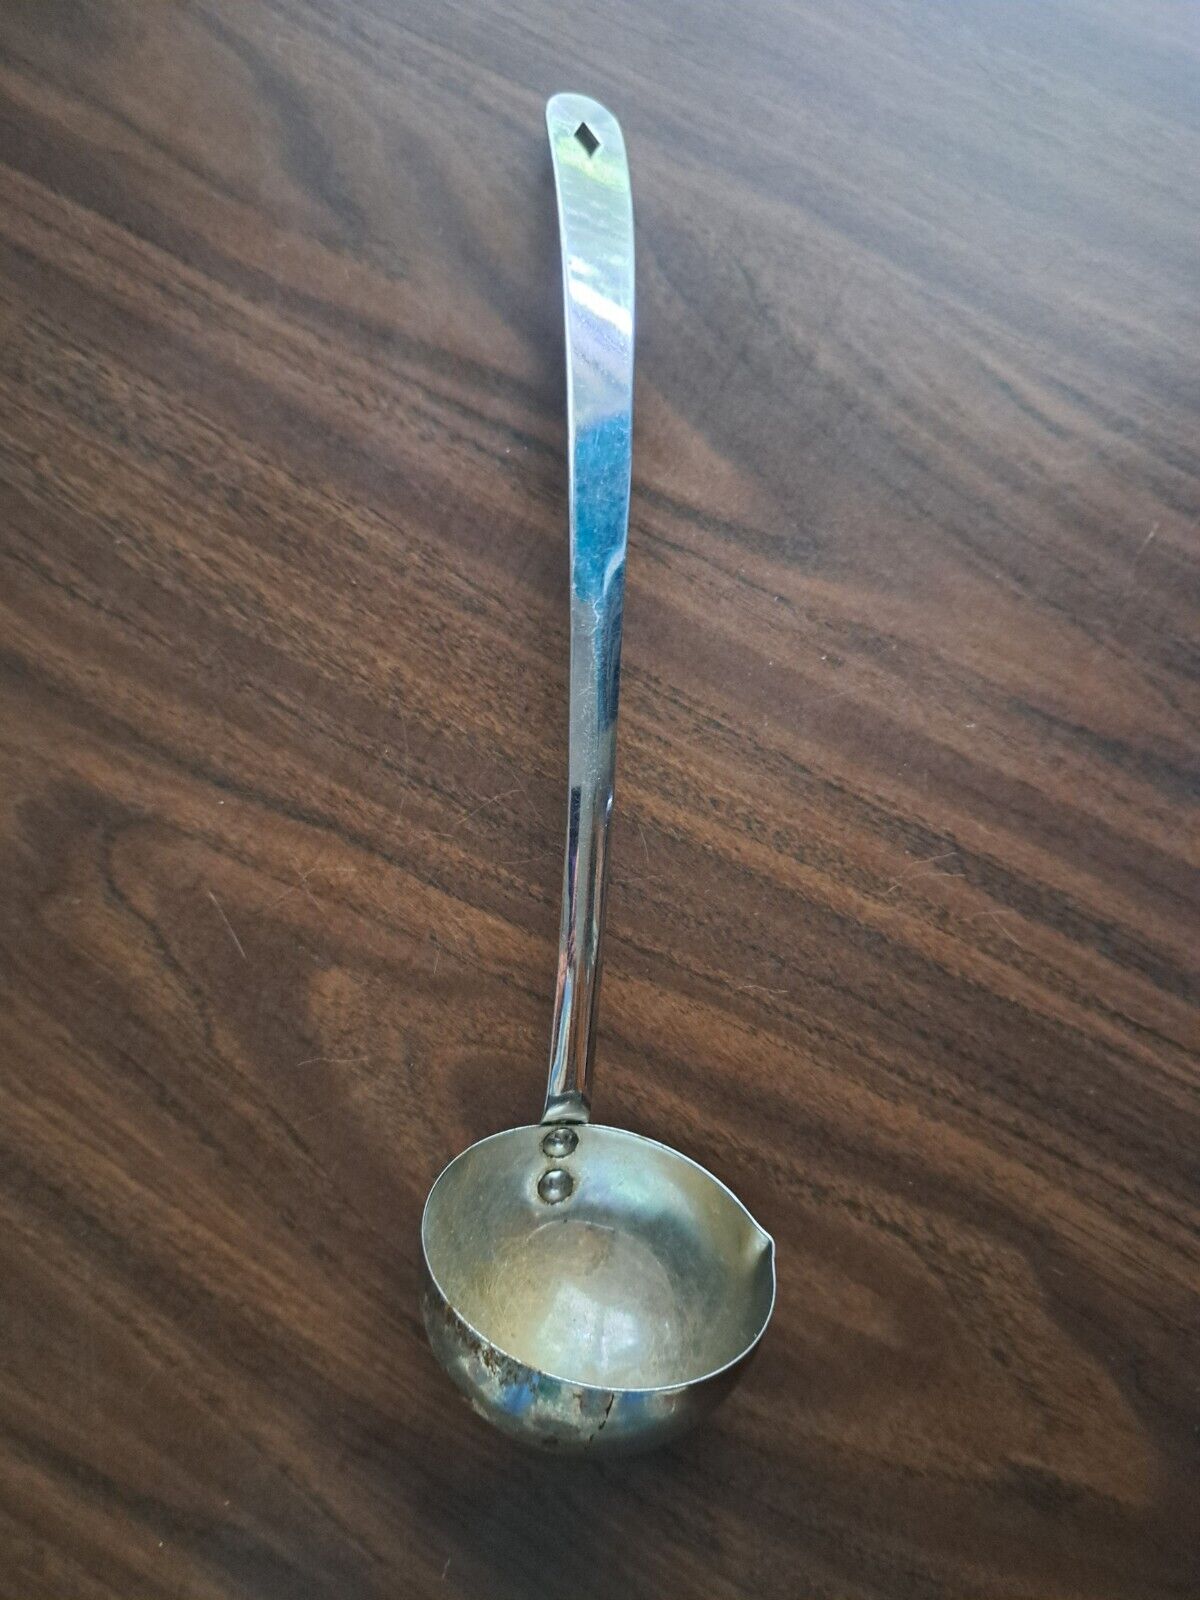 Vintage Irvin Ware Chrome Soup Ladle Dipper Spoon with Pour Spout Hanger Kitchen